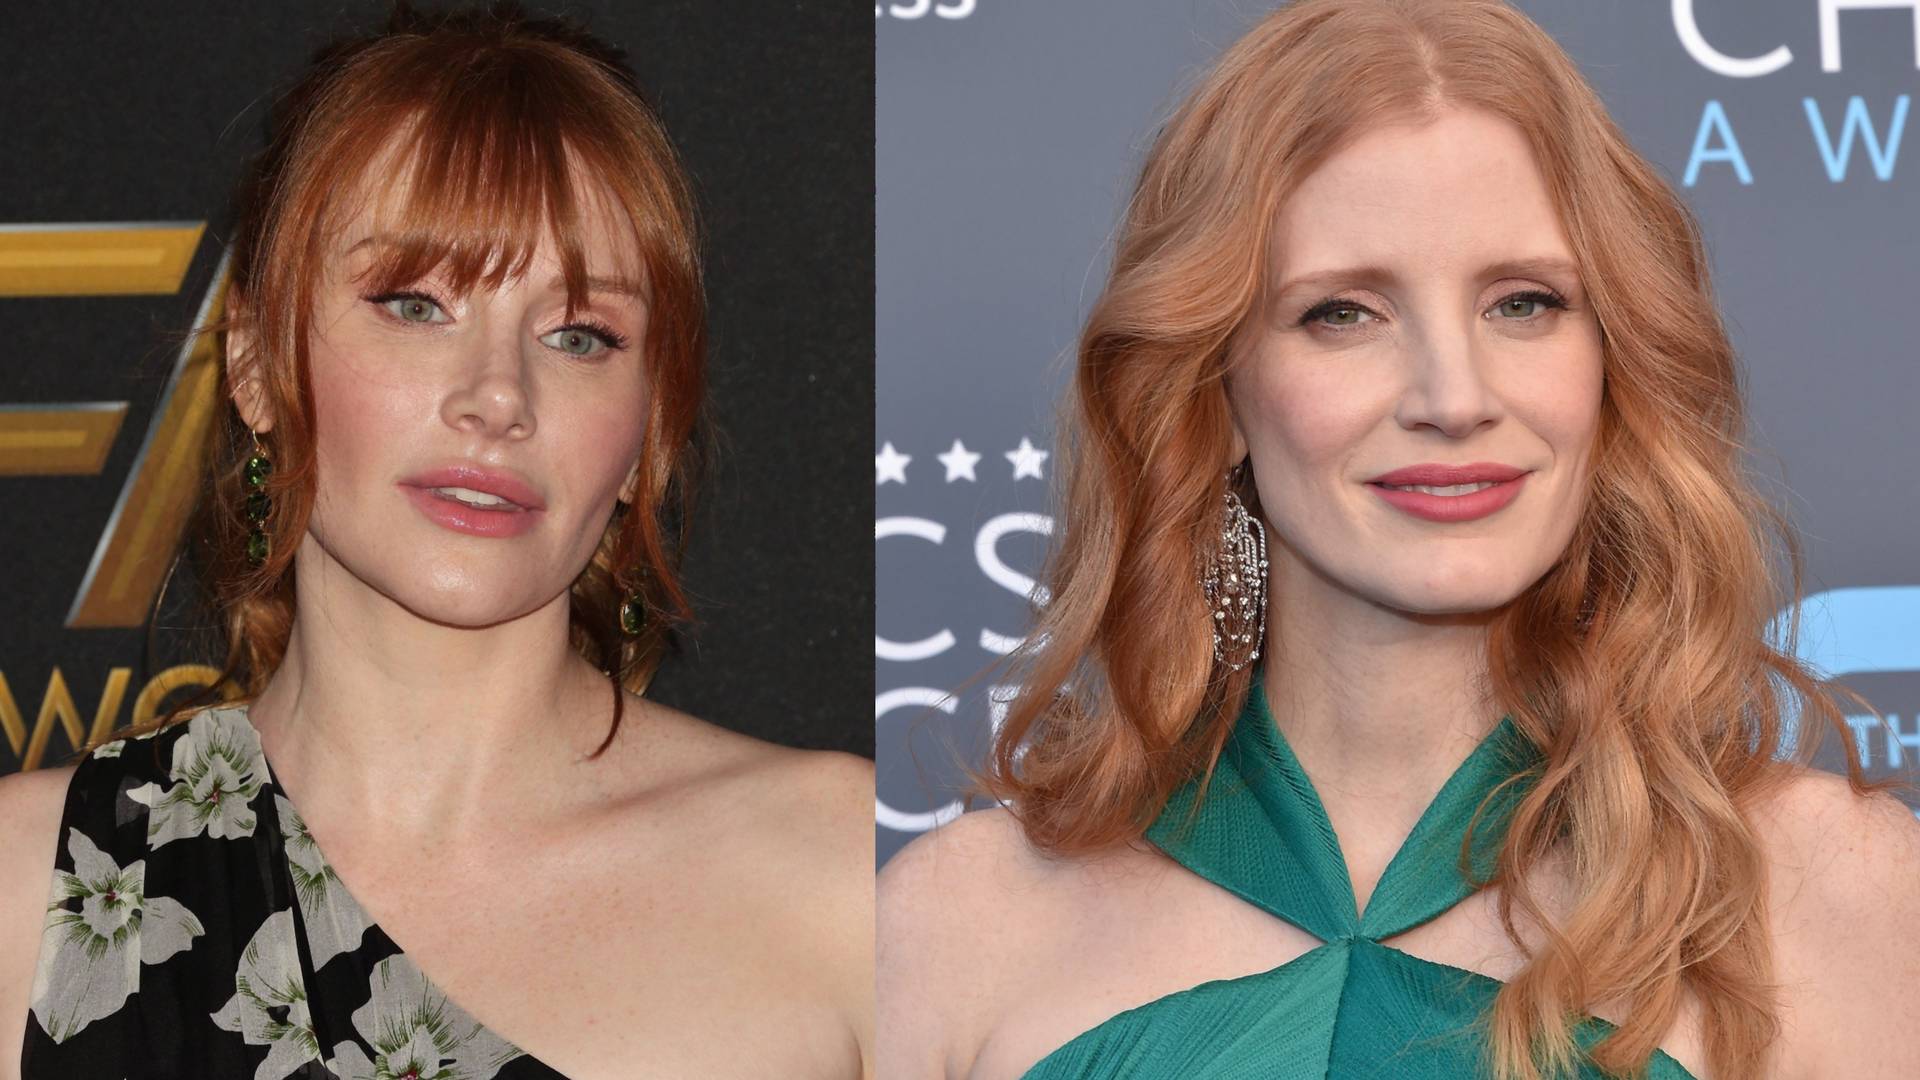 Ne, na slici nije ista glumica sa drugačijom frizurom - iako to svi misle